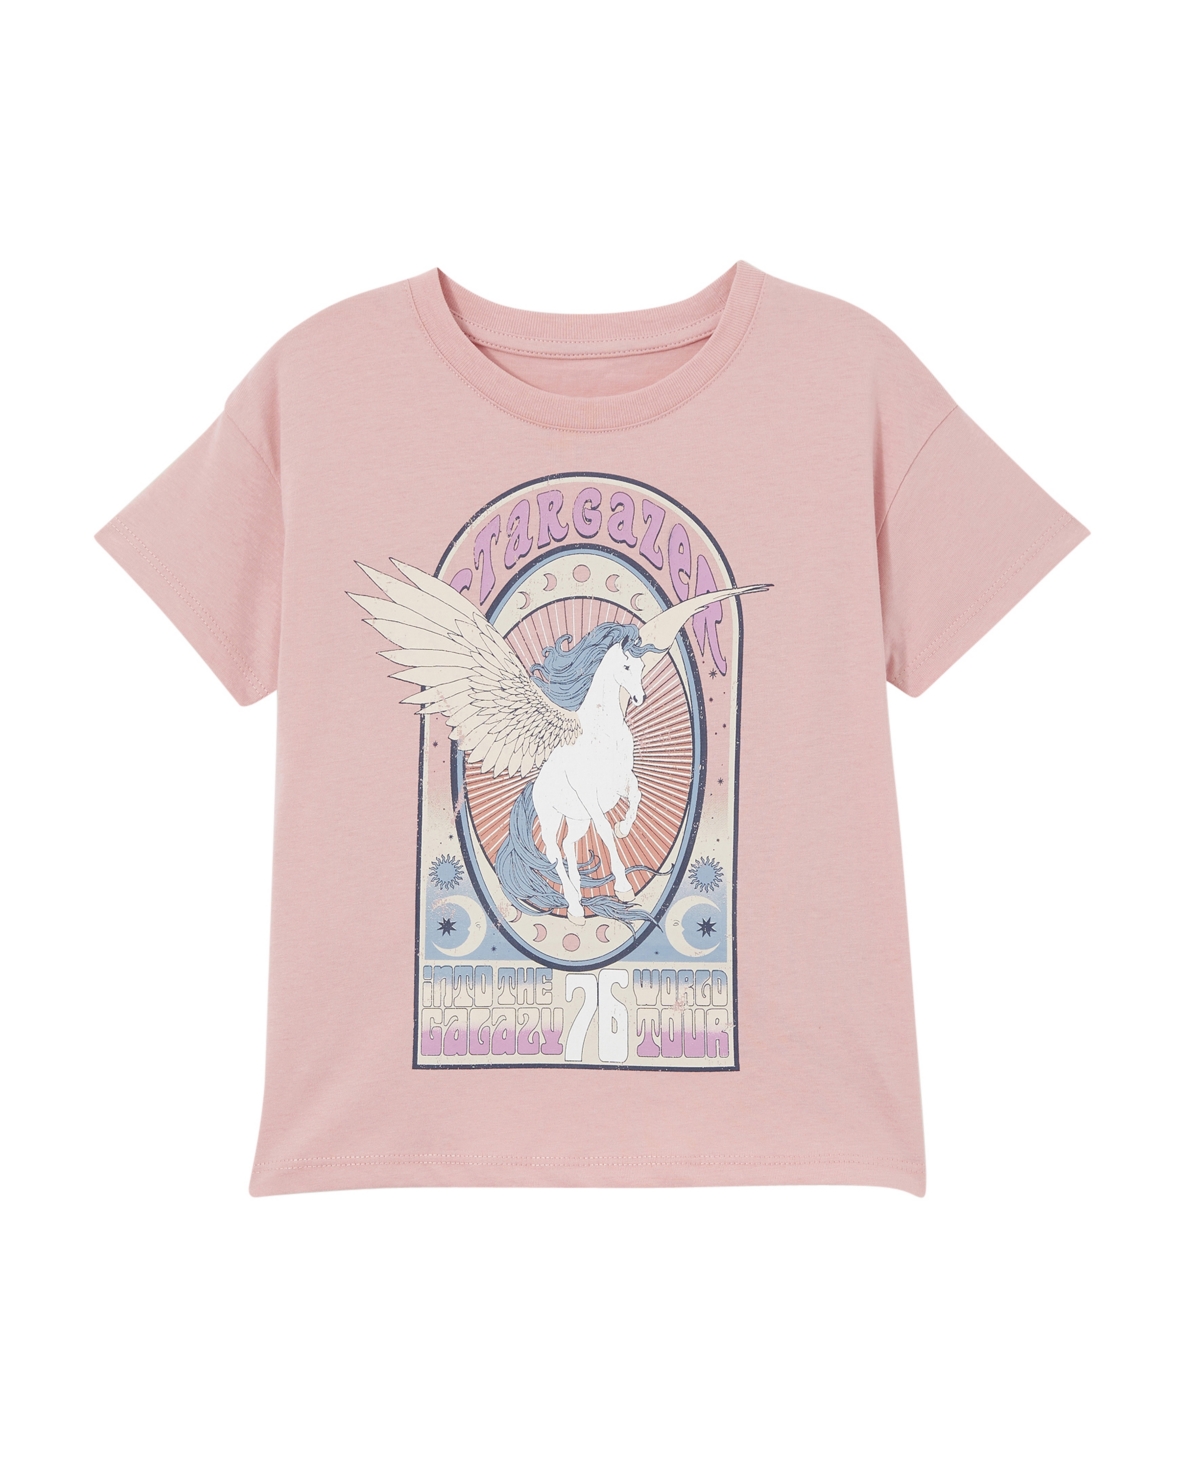 Cotton On Kids' Little Girls Poppy Short Sleeve Print T-shirt In Zephyr,unicorn Stargazer